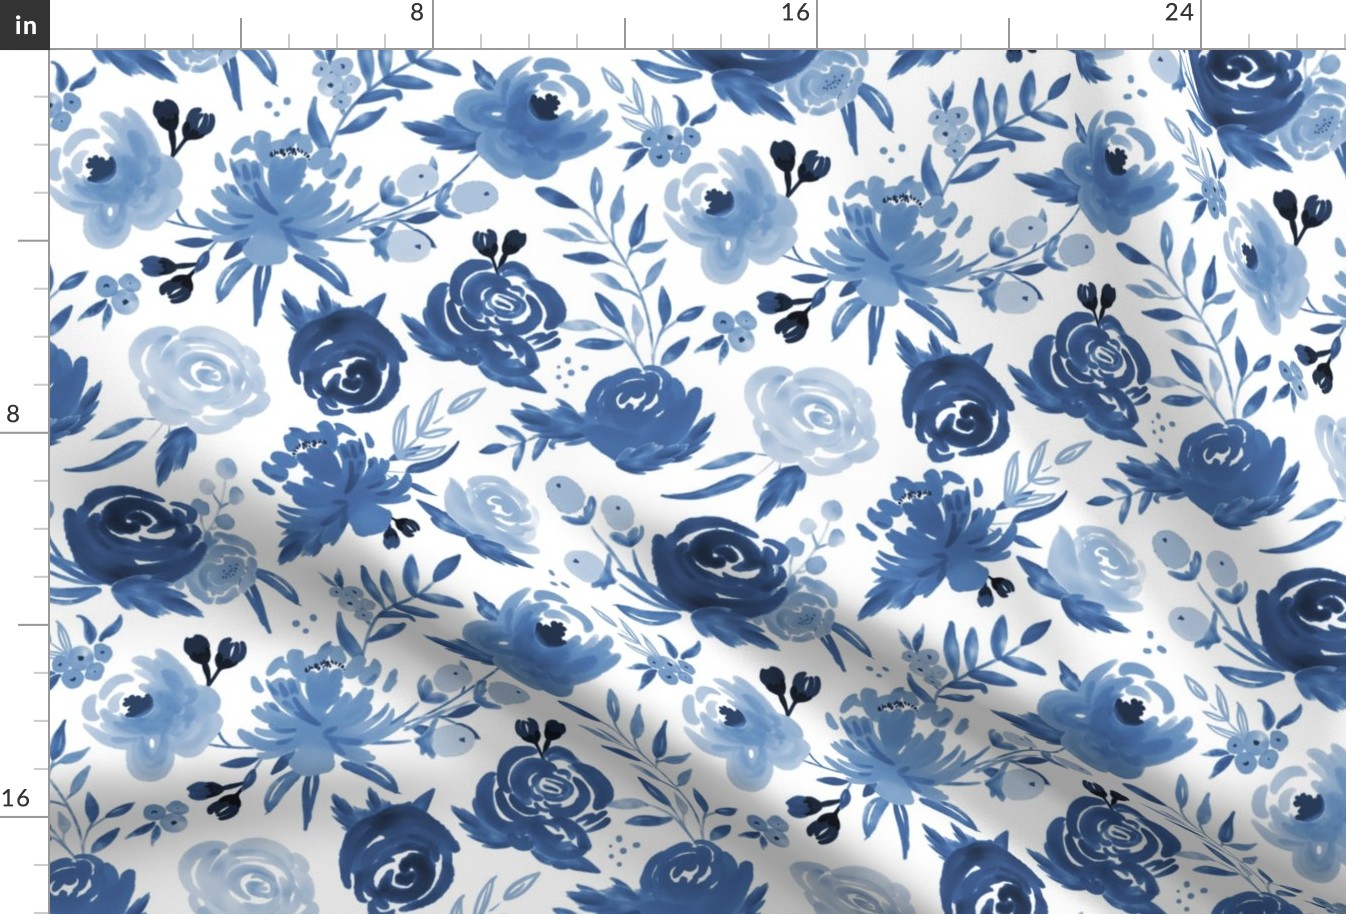 Monochrome Blue Watercolor Floral